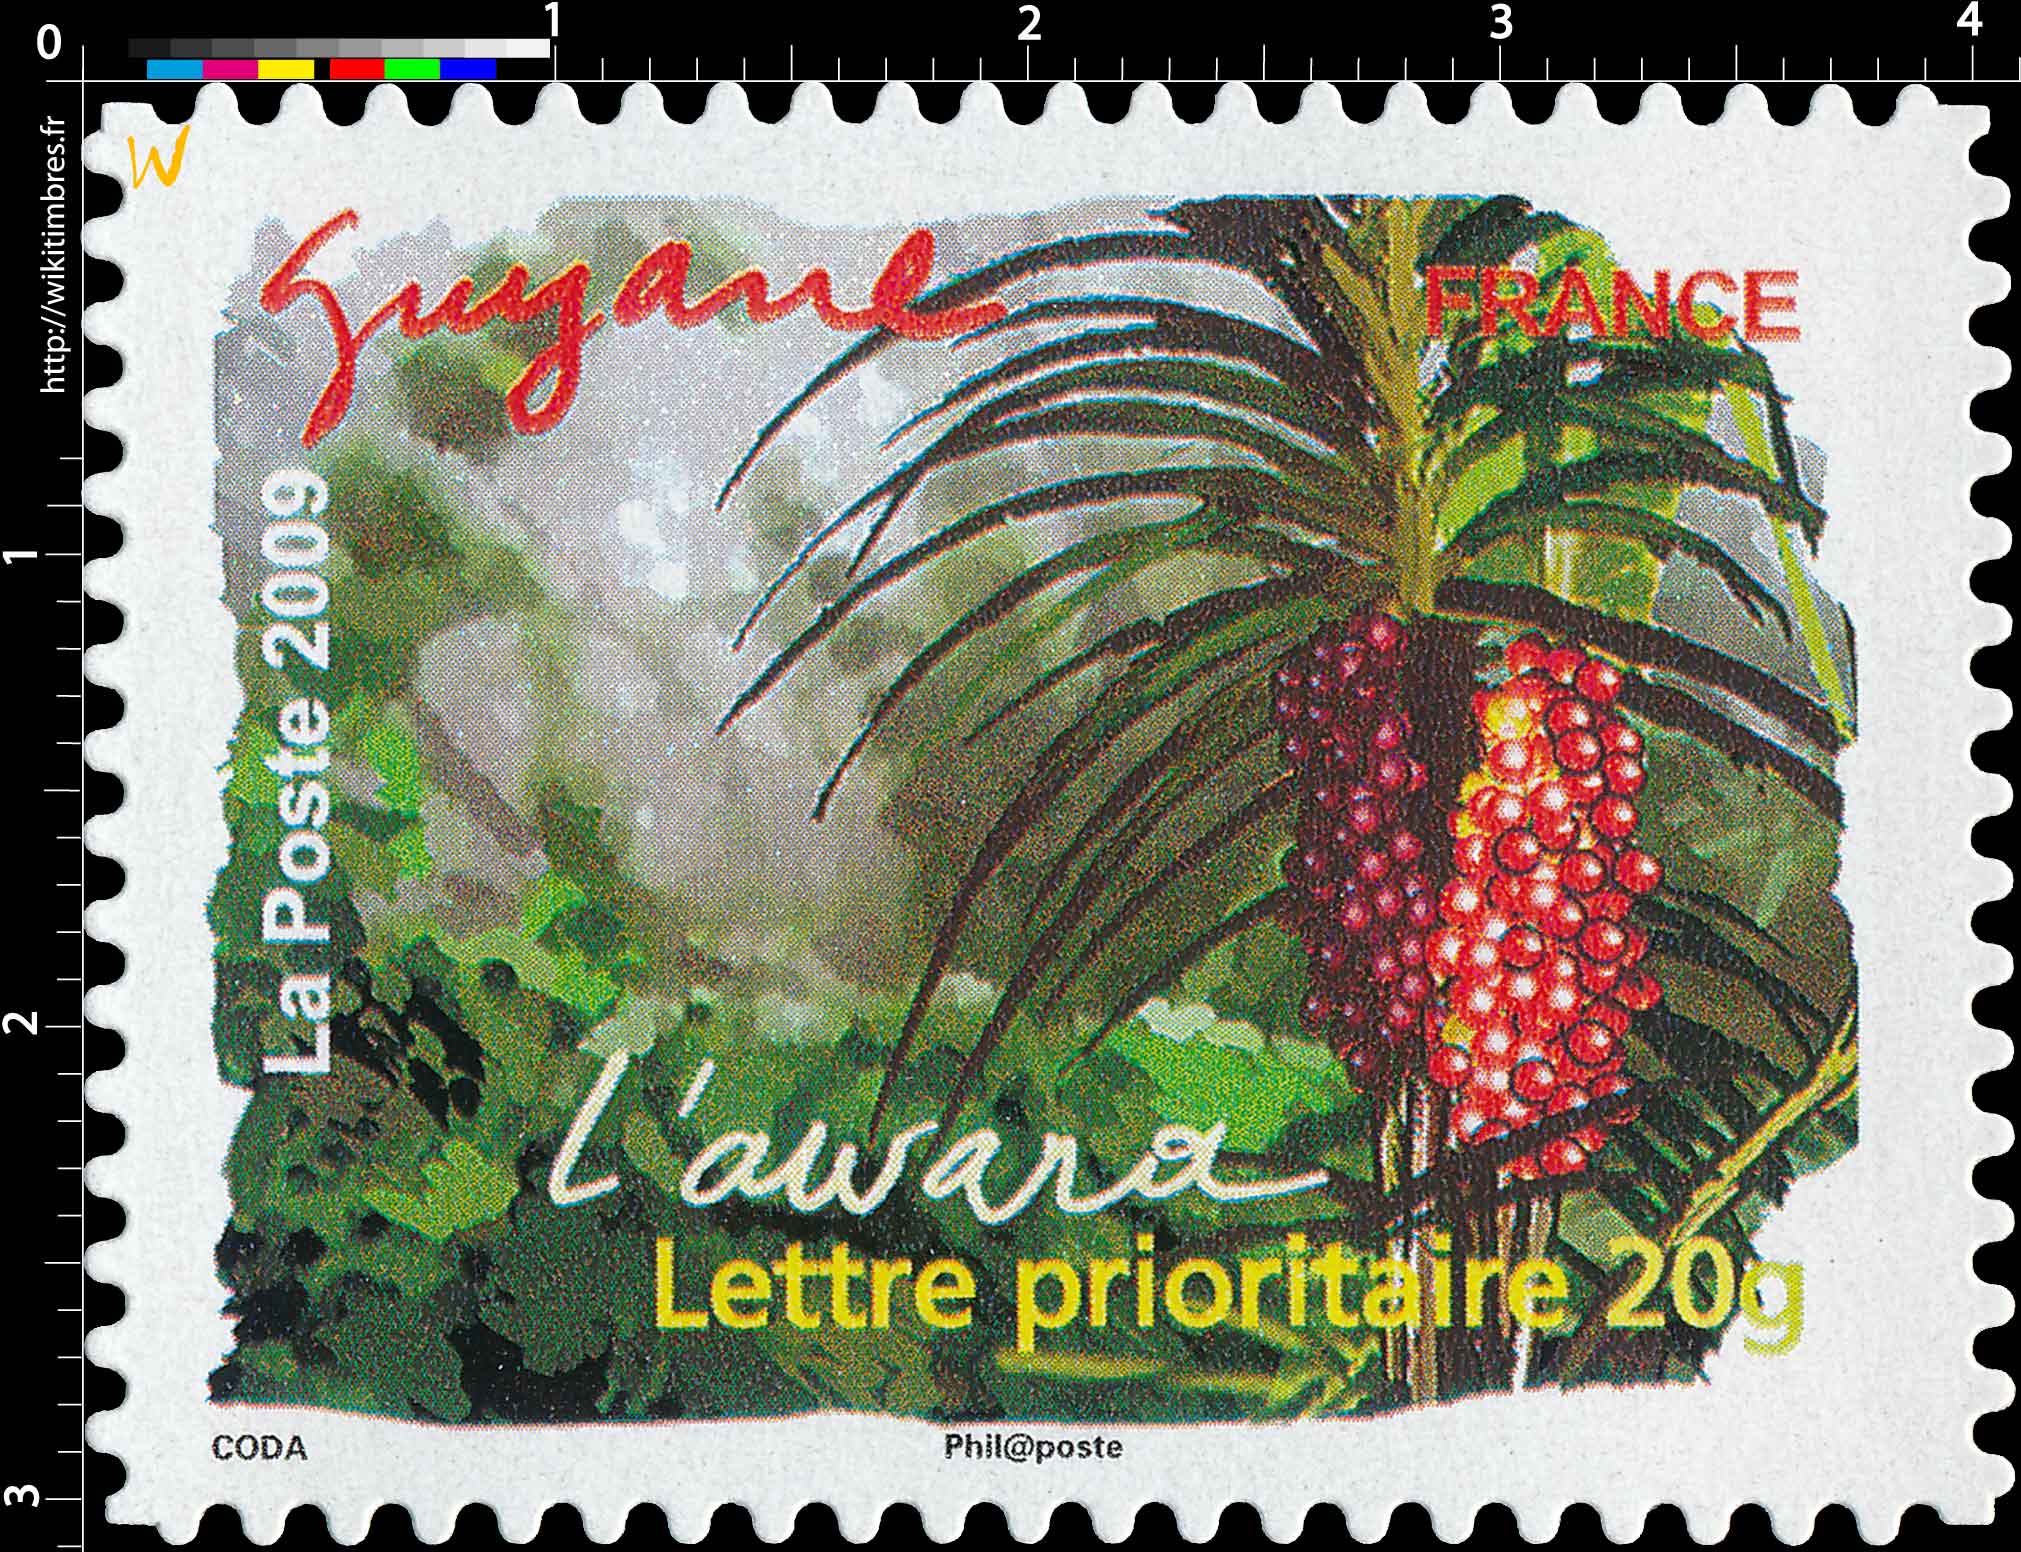 2009 Guyane L'awara